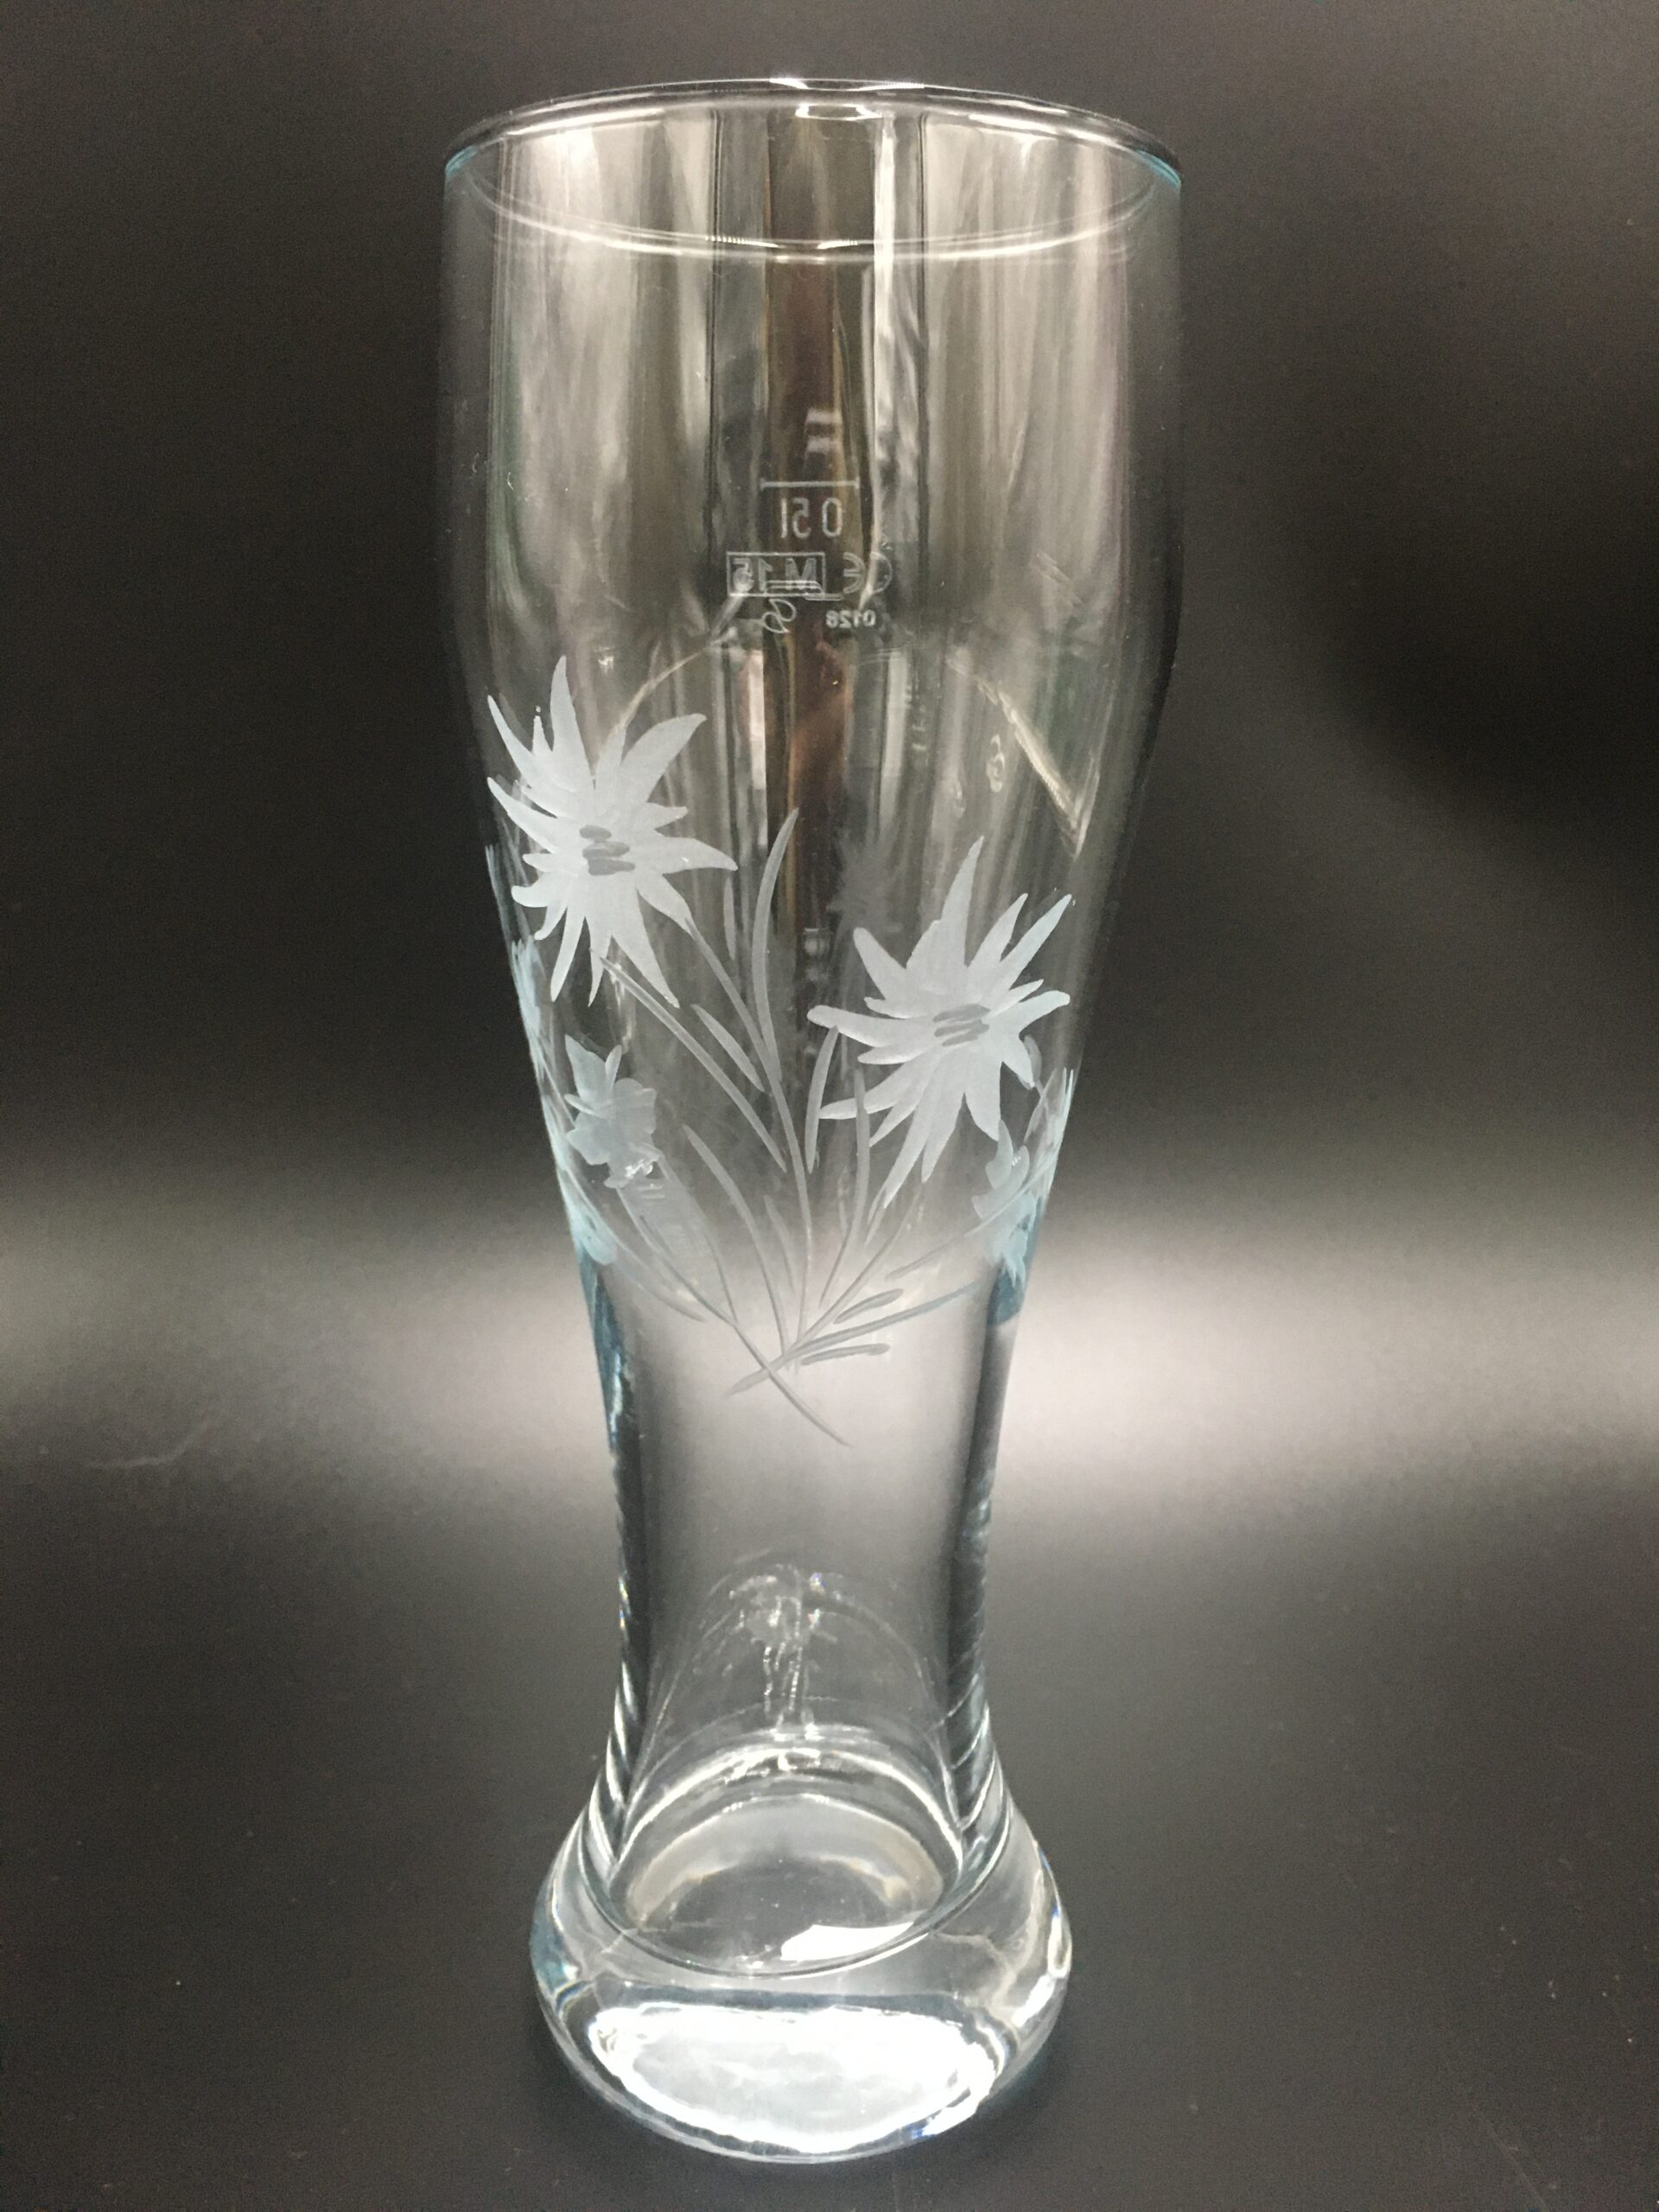 Schönes Weizenbierglas 0,5l mit Edelweiß – Glasbläserei Claudia Schlenz